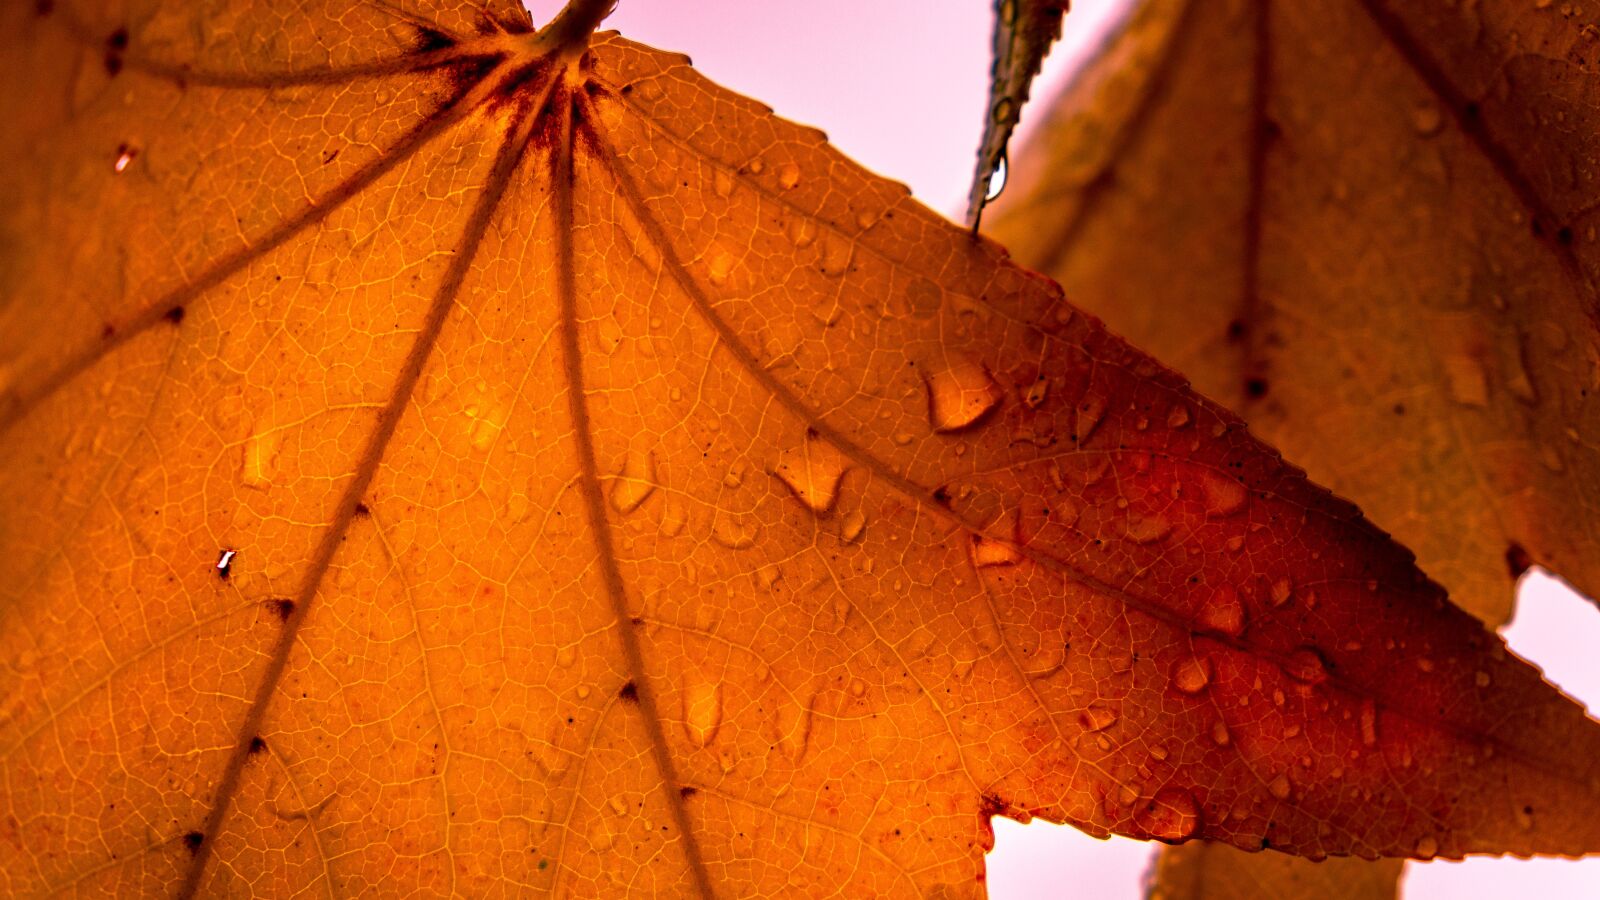 Sony a6500 sample photo. Leaf, autumn, maple photography